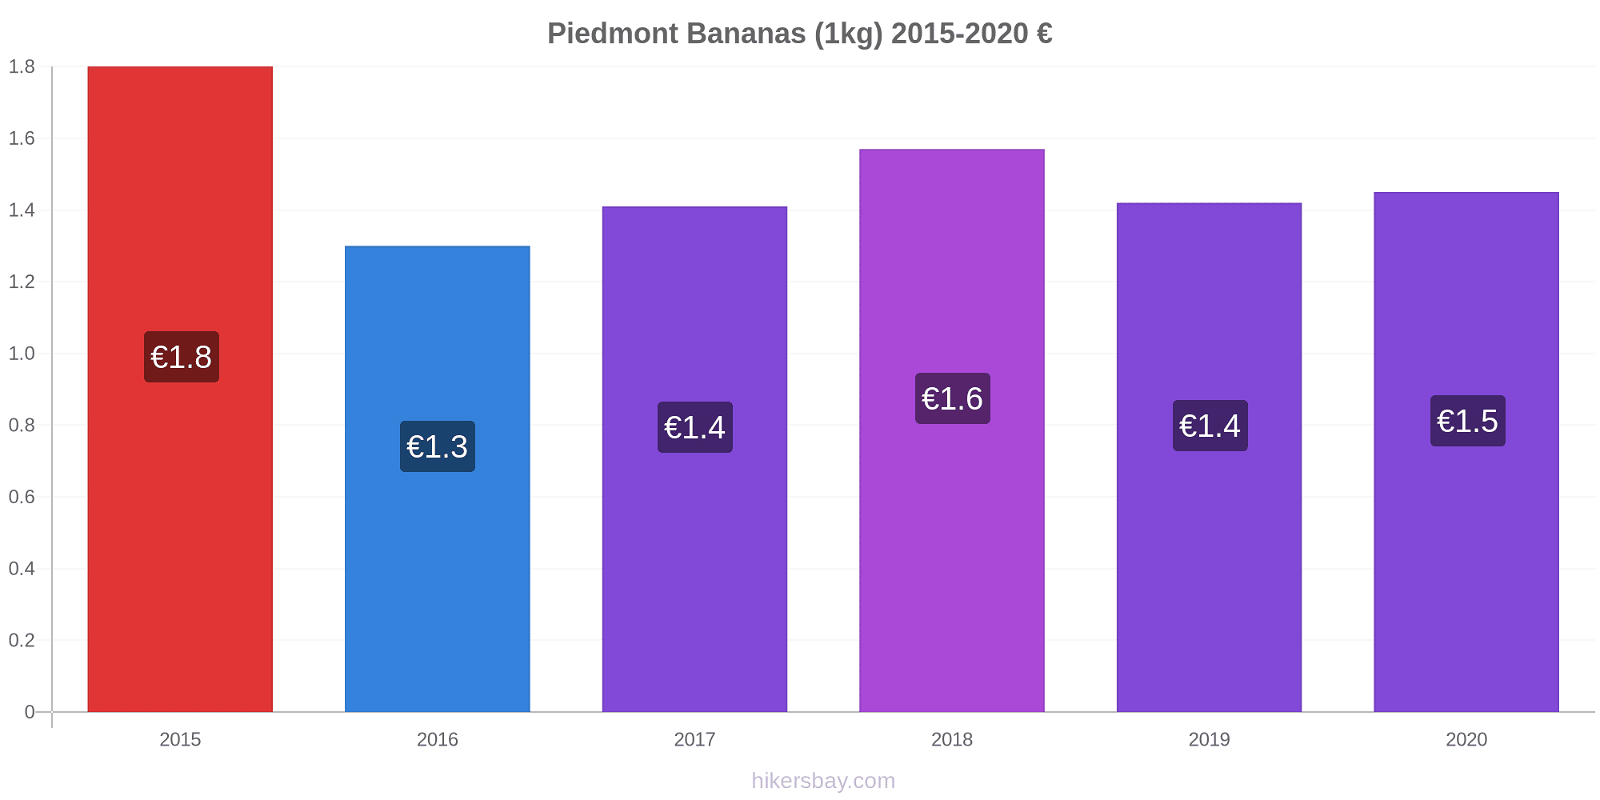 Piedmont price changes Bananas (1kg) hikersbay.com